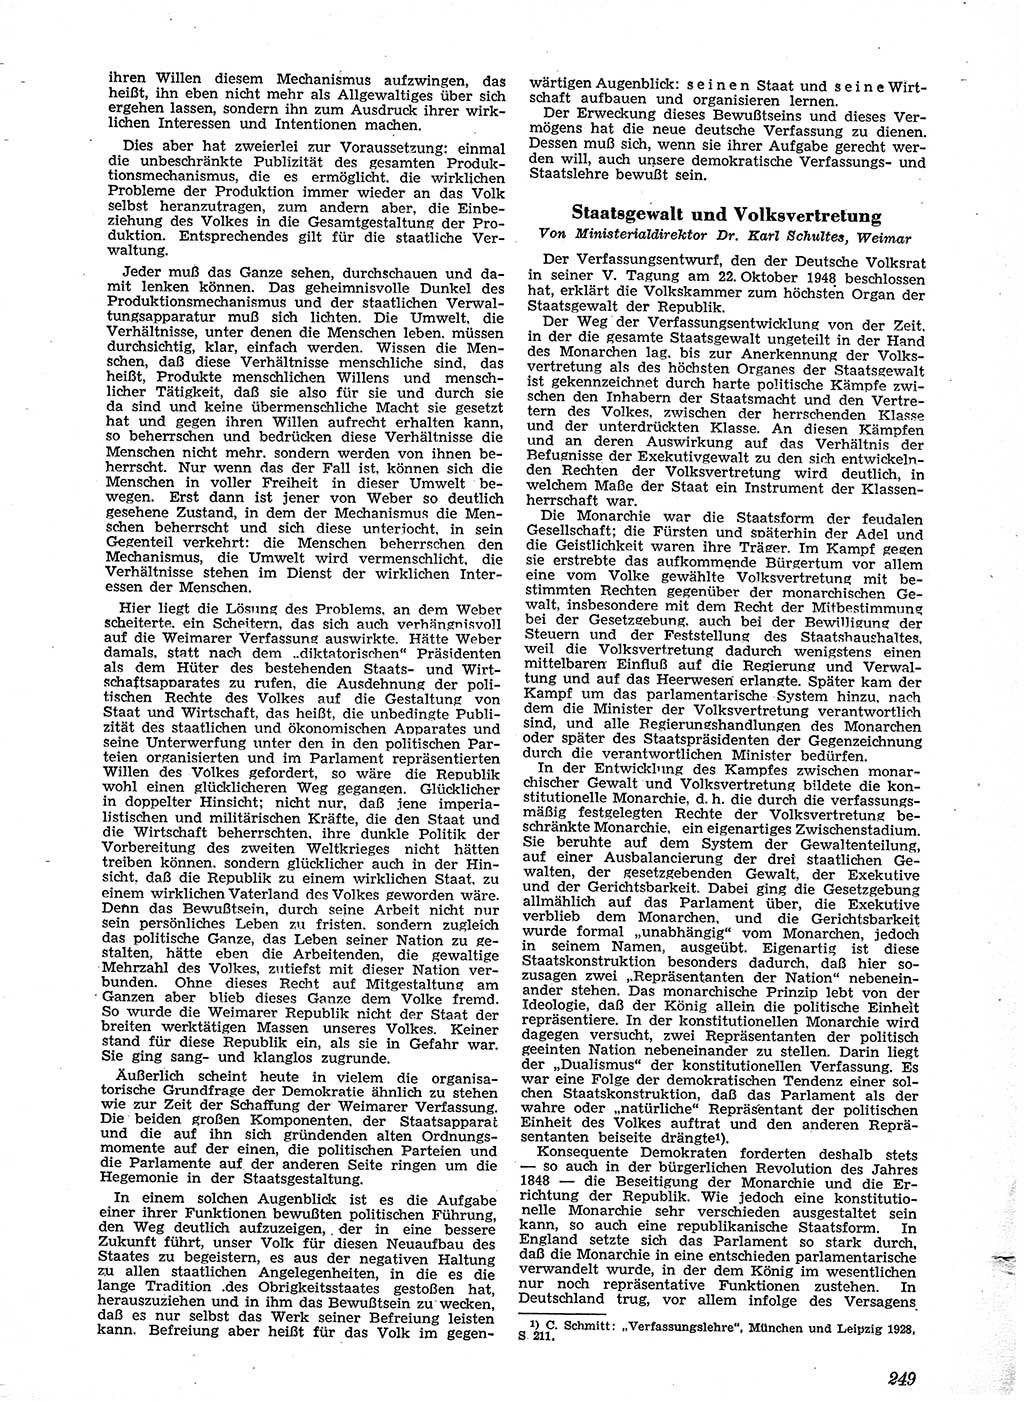 Neue Justiz (NJ), Zeitschrift für Recht und Rechtswissenschaft [Sowjetische Besatzungszone (SBZ) Deutschland], 2. Jahrgang 1948, Seite 249 (NJ SBZ Dtl. 1948, S. 249)